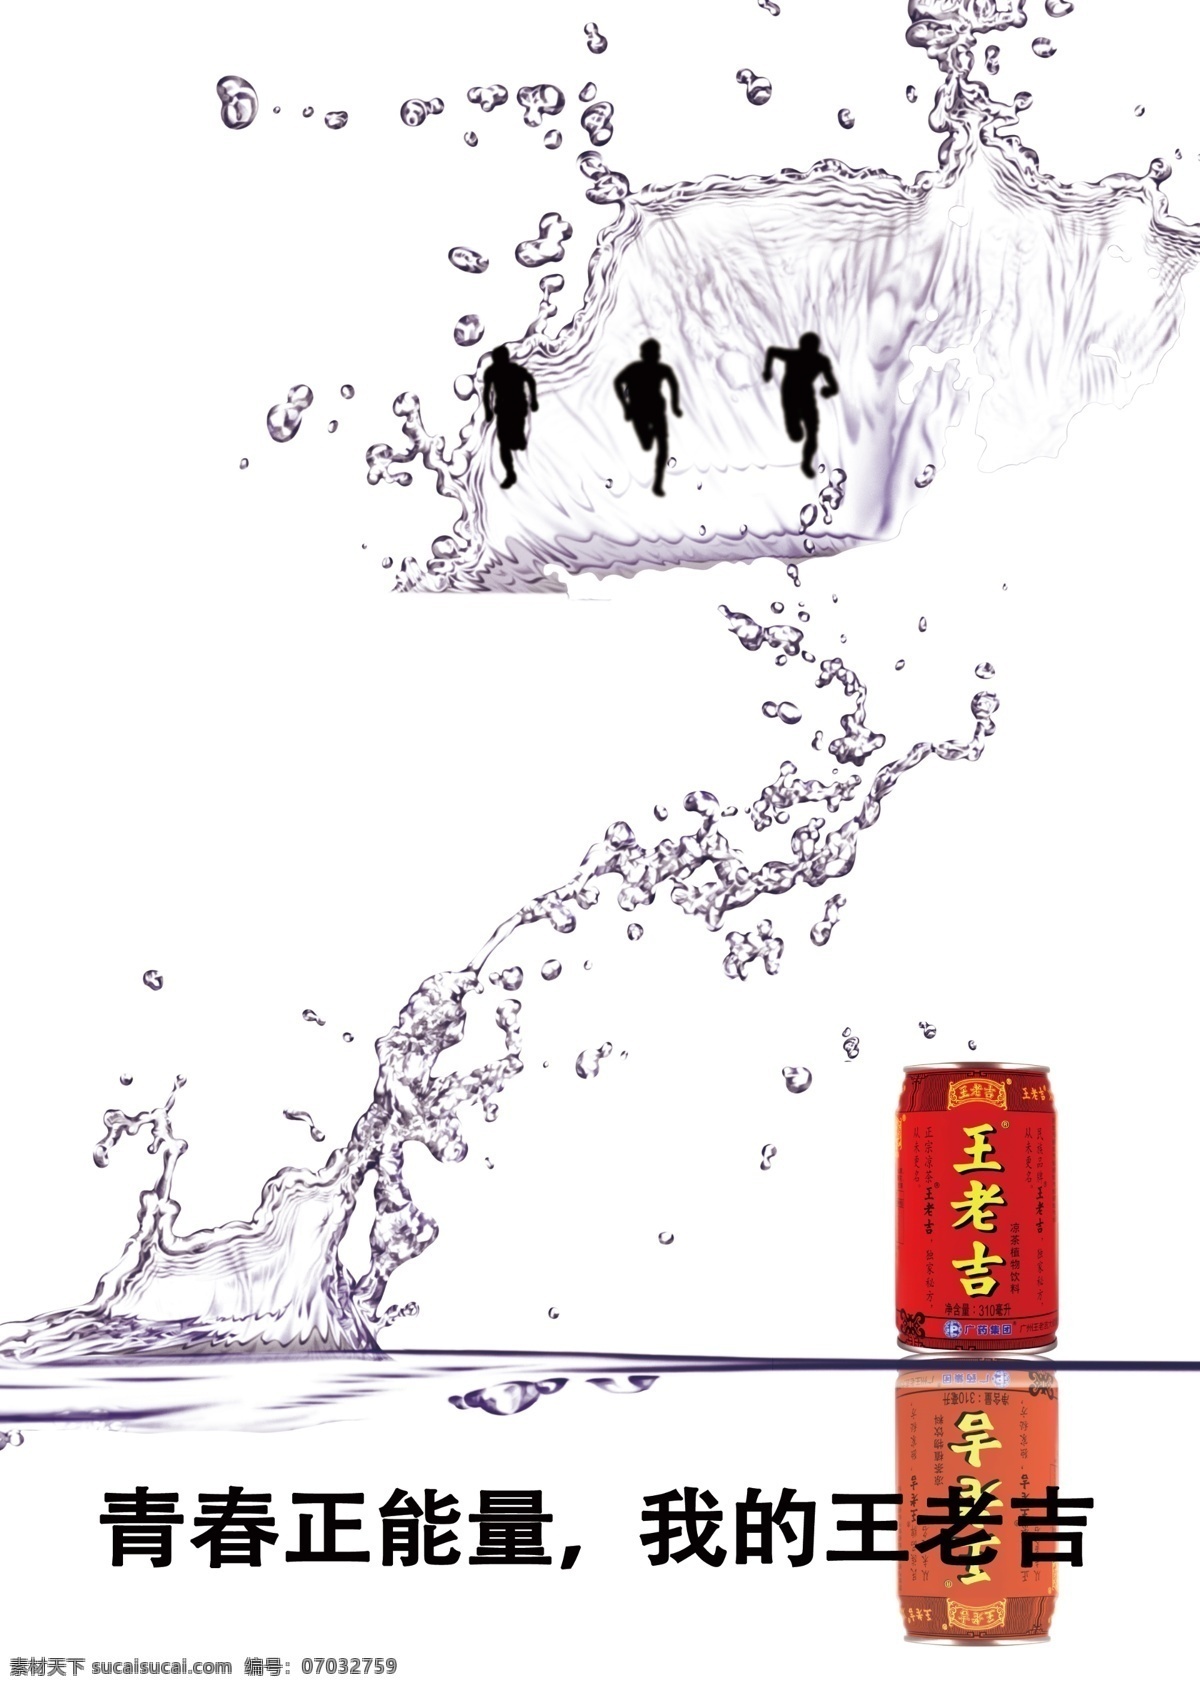 青春 正 能量 王老 吉 正能量 王老吉 广告 海报 喷洒 体育运动 跑步 比赛 水滴 团结 广告设计模板 源文件